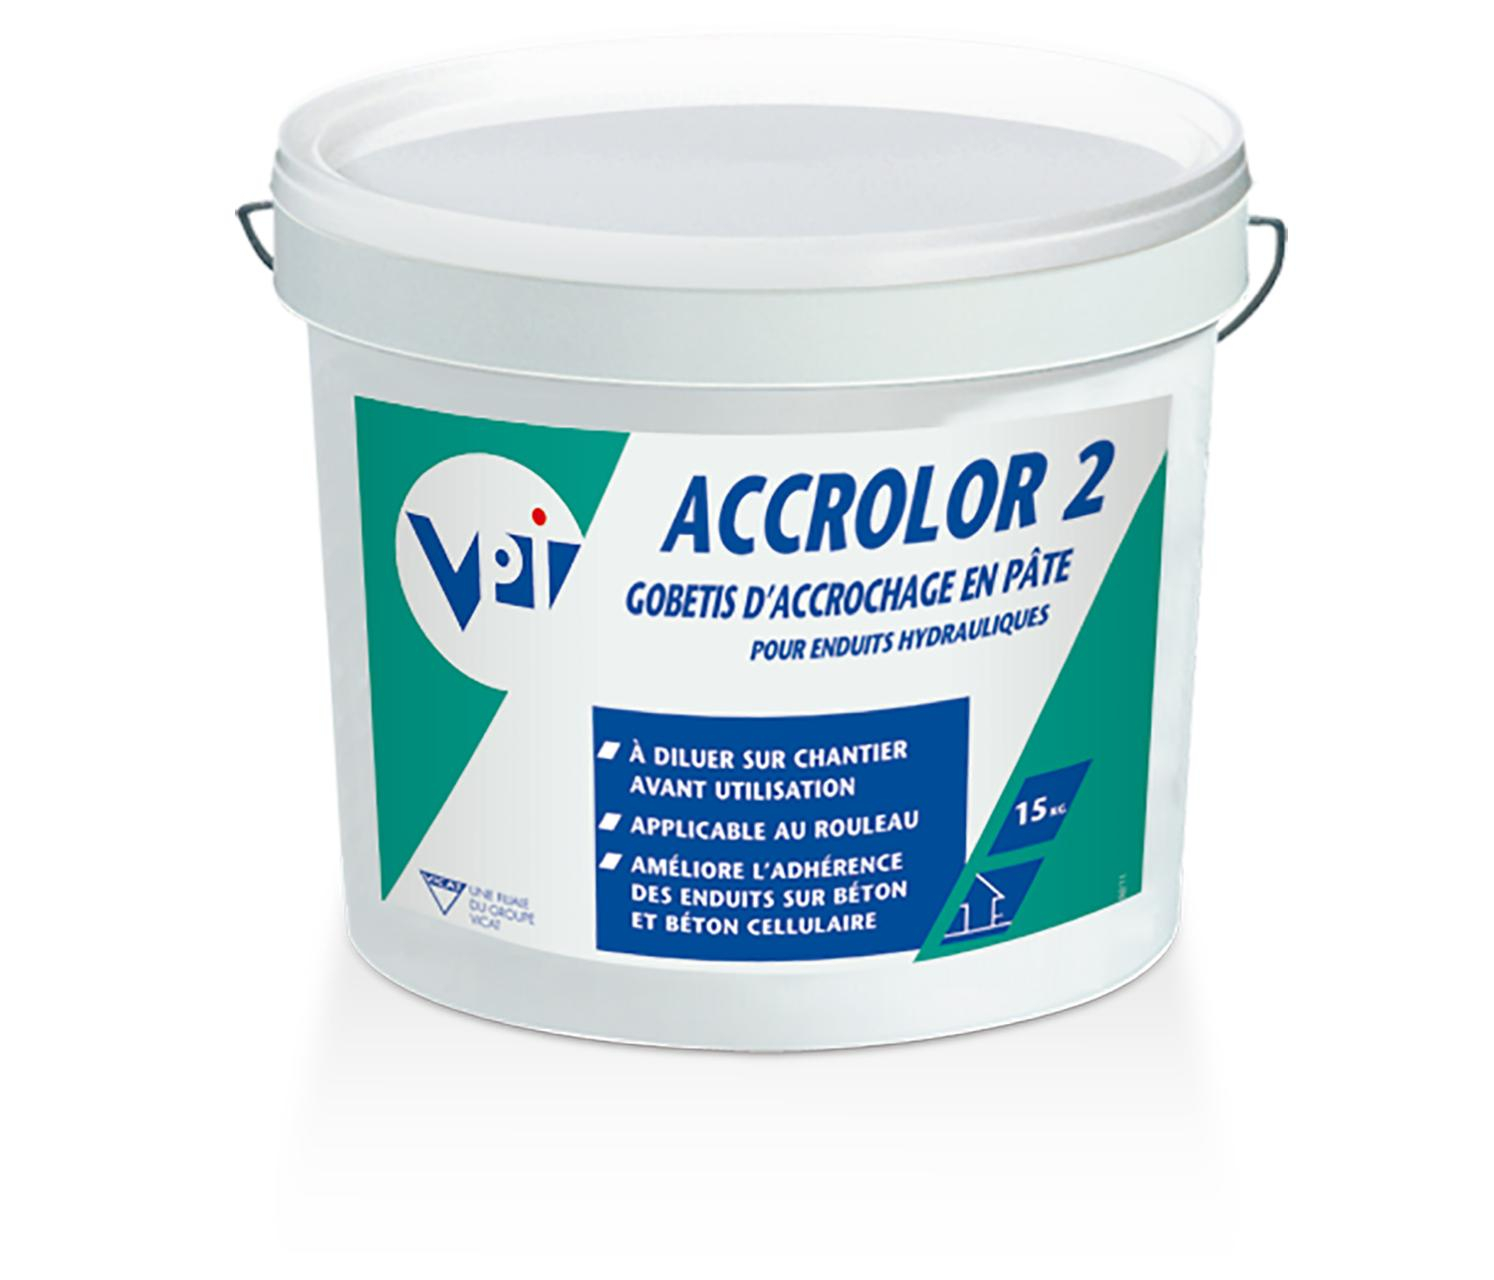 accrolor-2-15-kg-170584-vpi-0